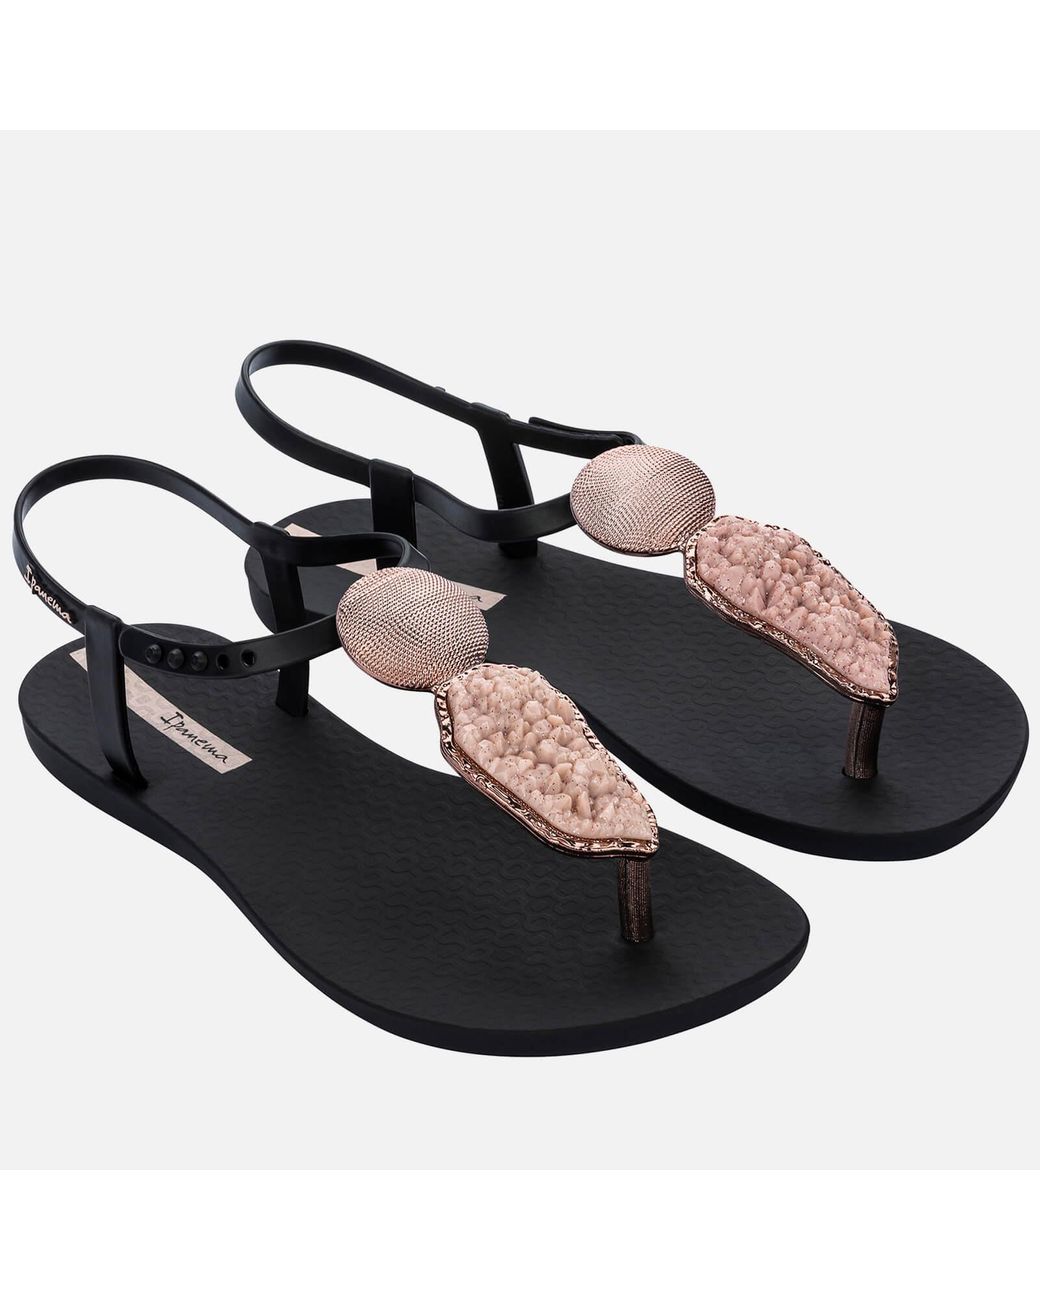 Ipanema Elegant Sandals in Black | Lyst